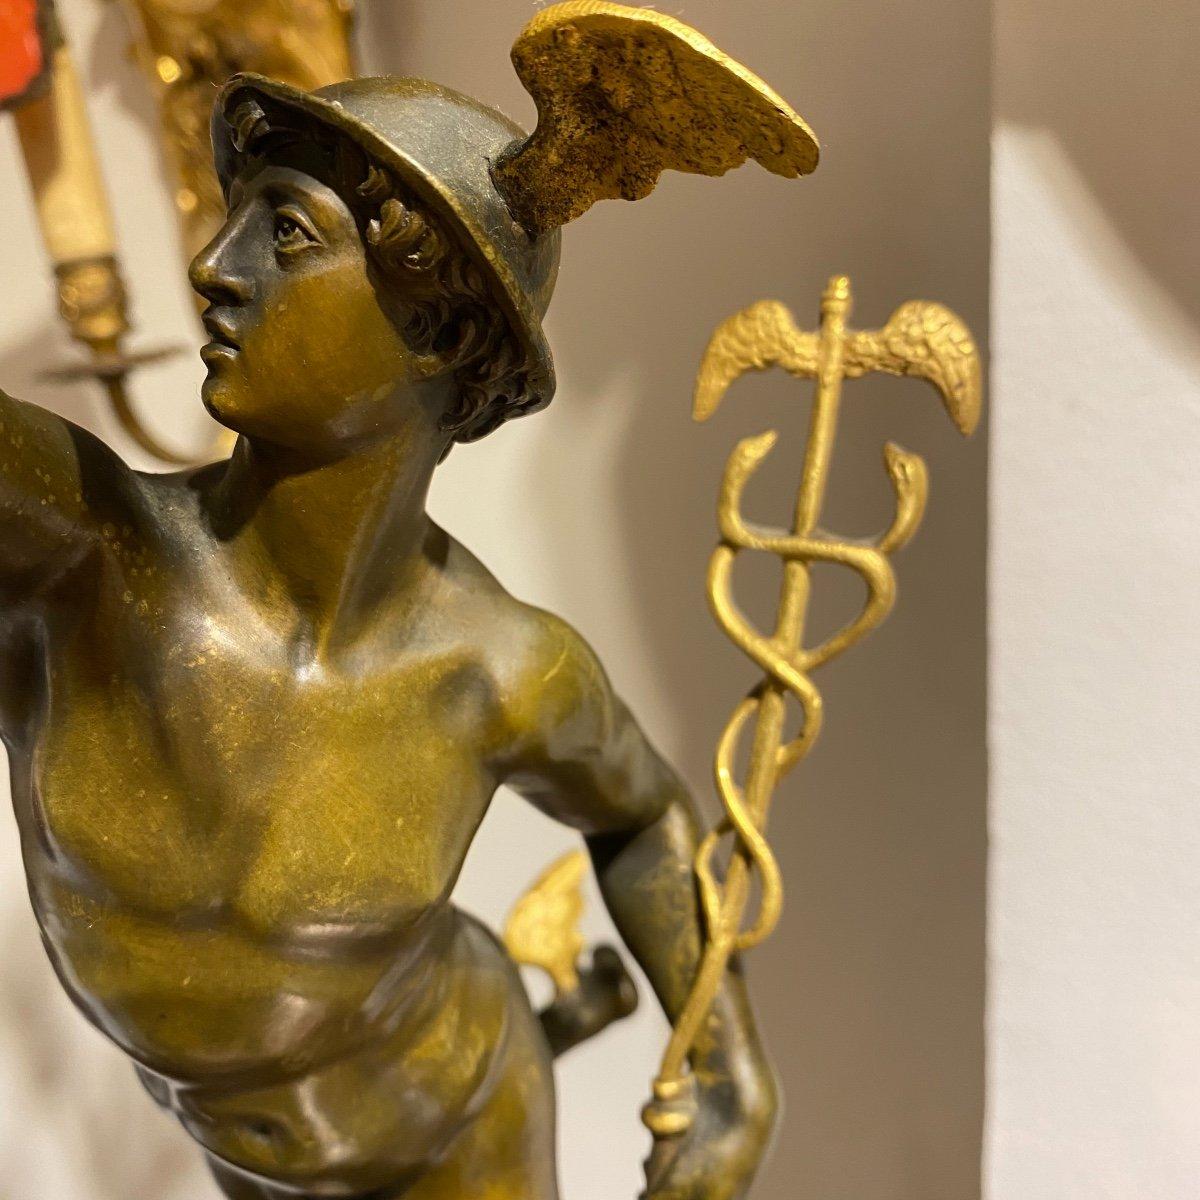 Diese beeindruckenden, 78 cm hohen Bronzeleuchter mit den vergoldeten und fein patinierten mythologischen Figuren von Hermes und Diana stehen auf einem runden, kannelierten Sockel, der mit einem vergoldeten Bronzering verziert ist. Jeder